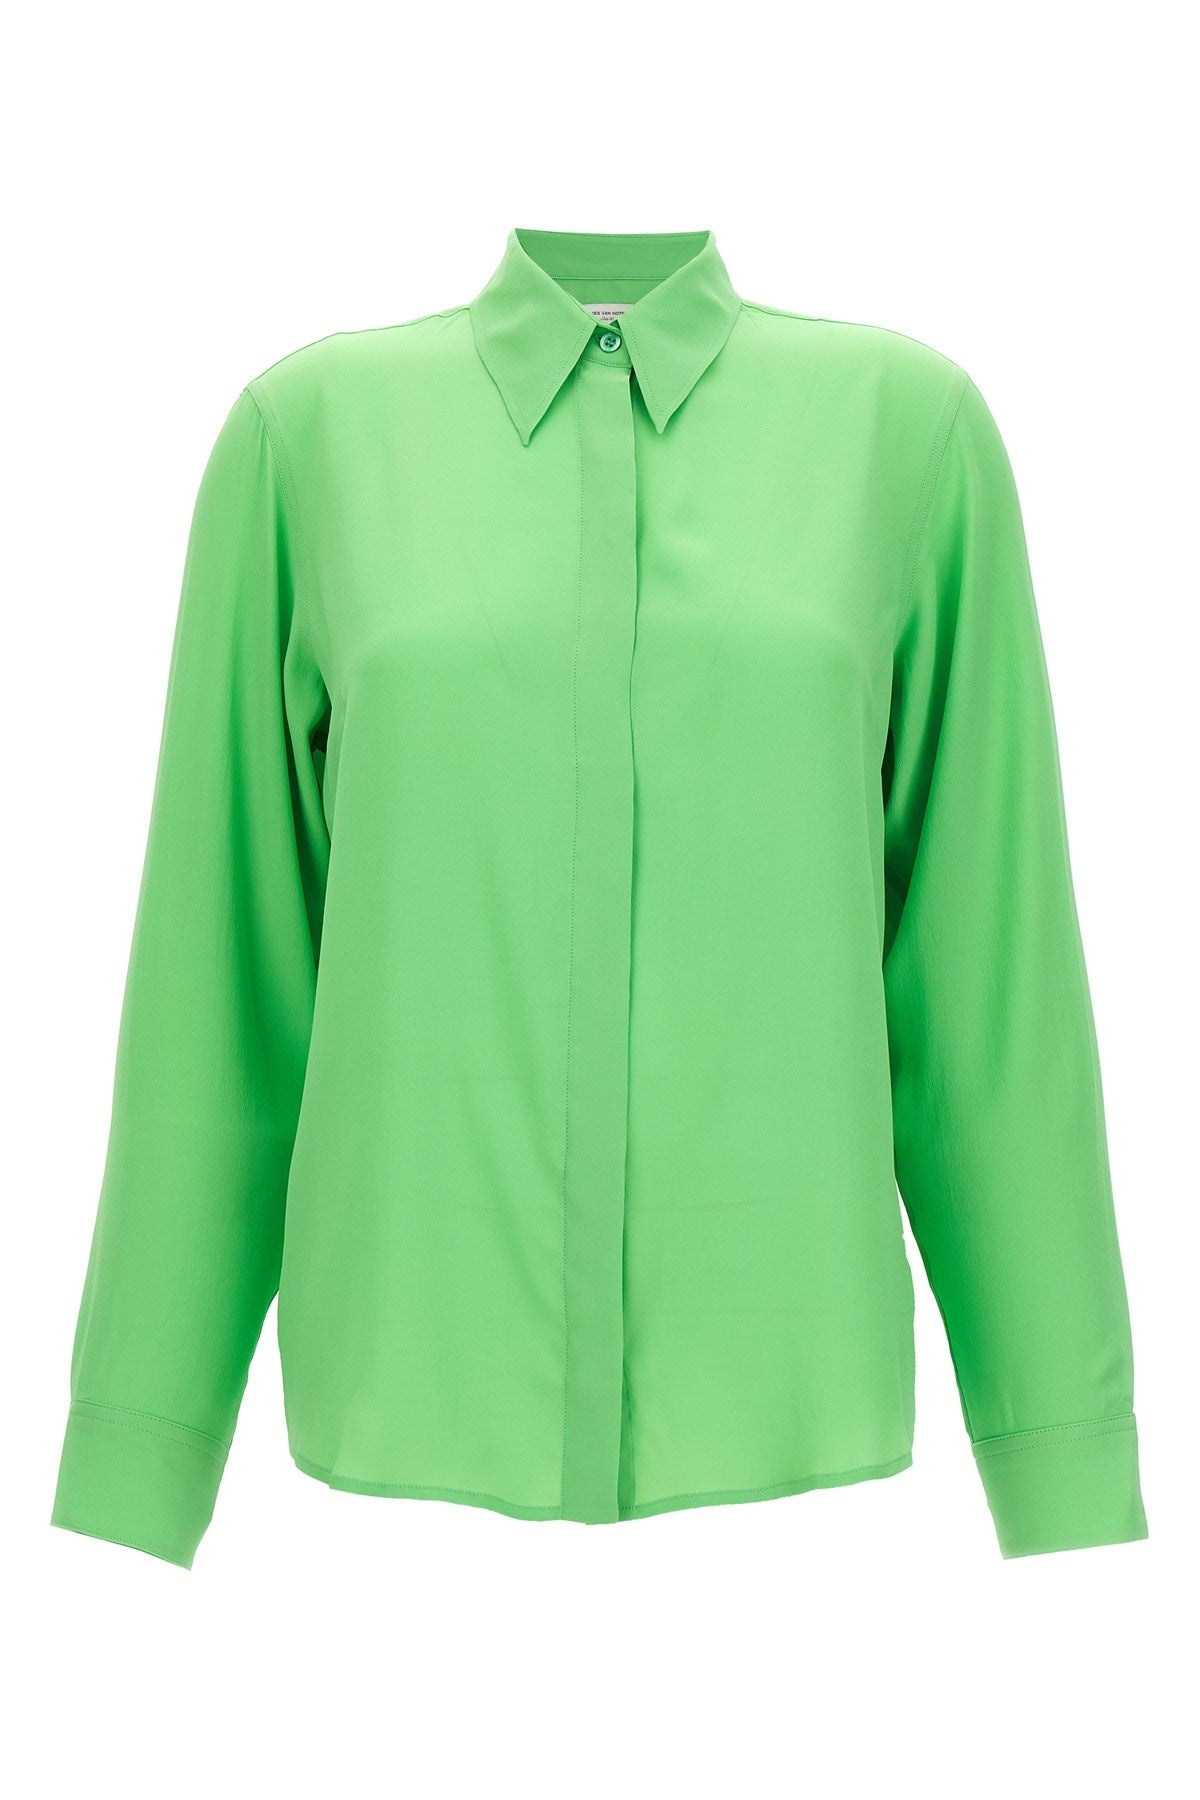 Dries Van Noten Women 'chowy' Shirt In Green